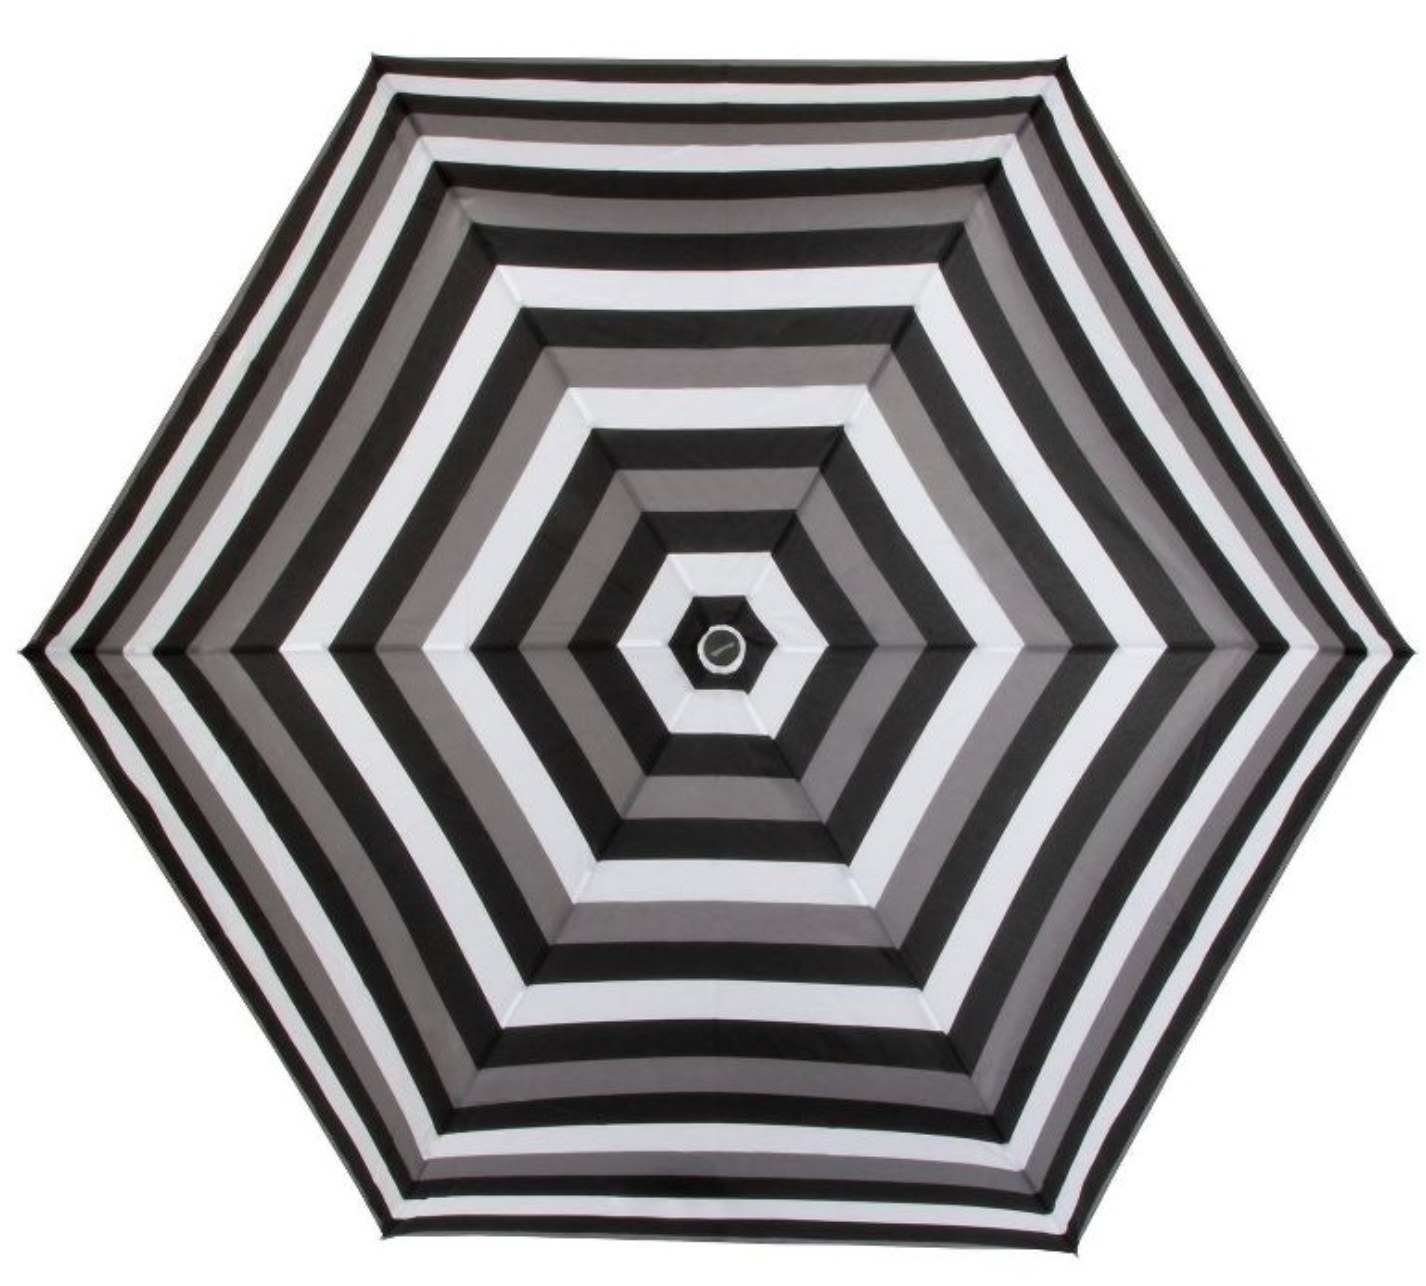 A black, white, and grey striped umbrella